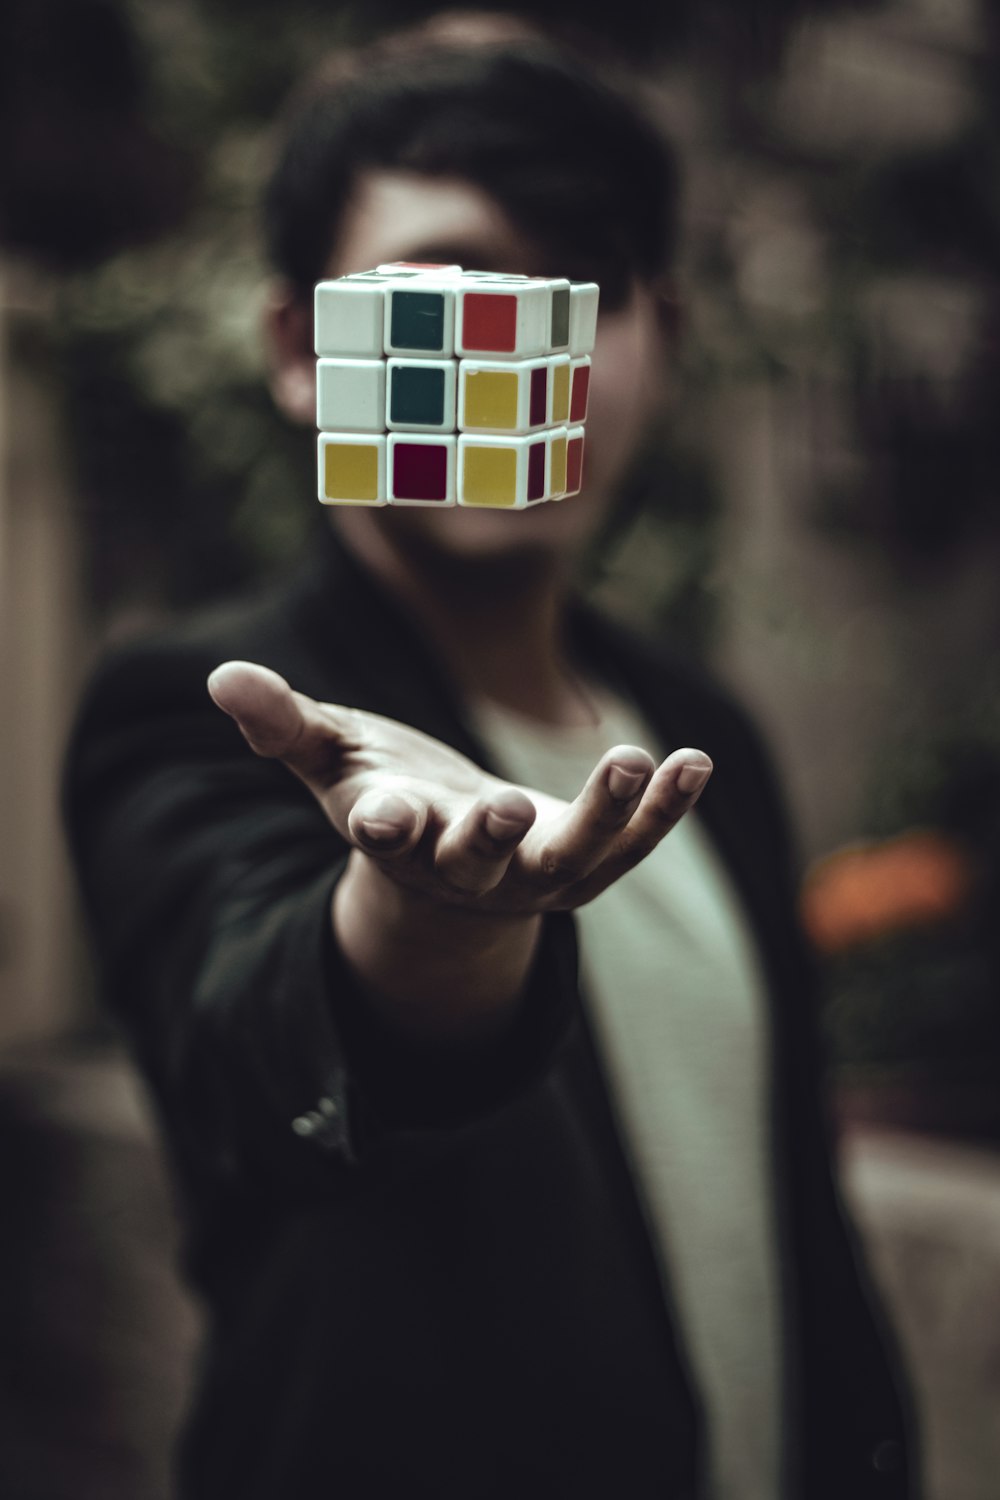 El cubo de Rubik flotando en la palma de la mano del hombre